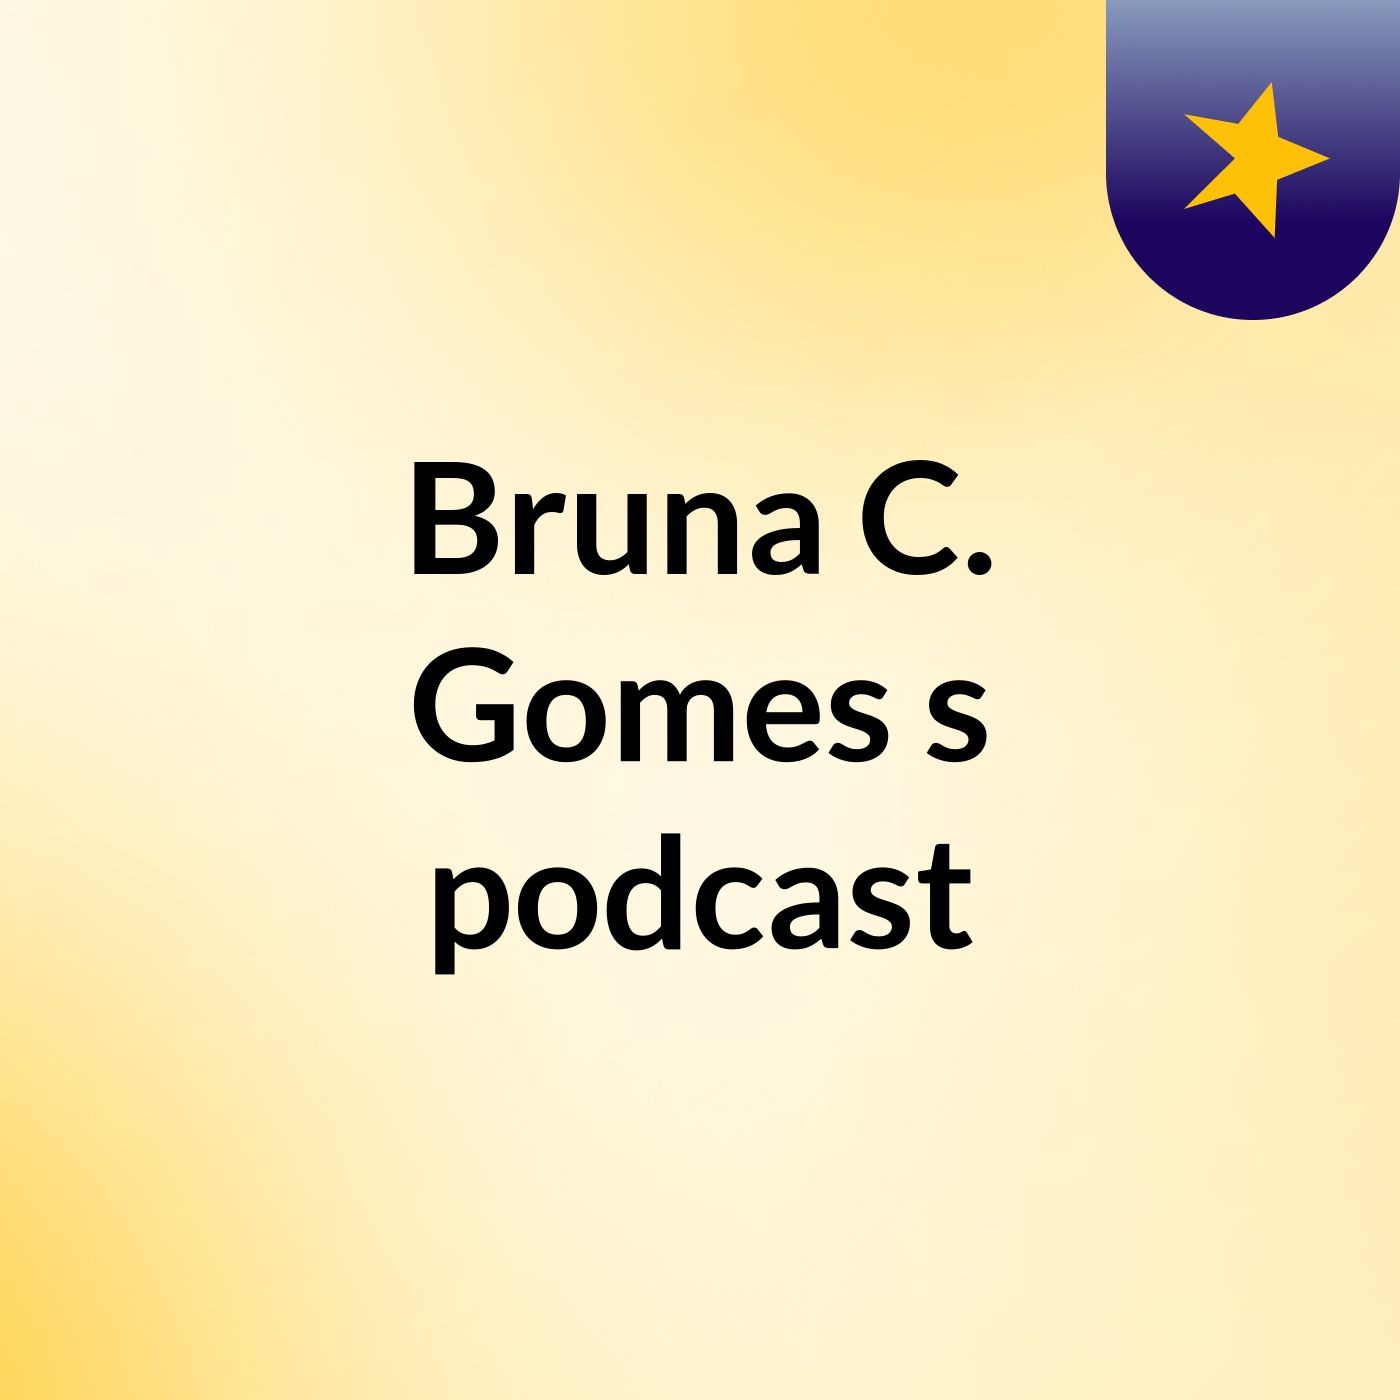 Bruna C. Gomes's podcast